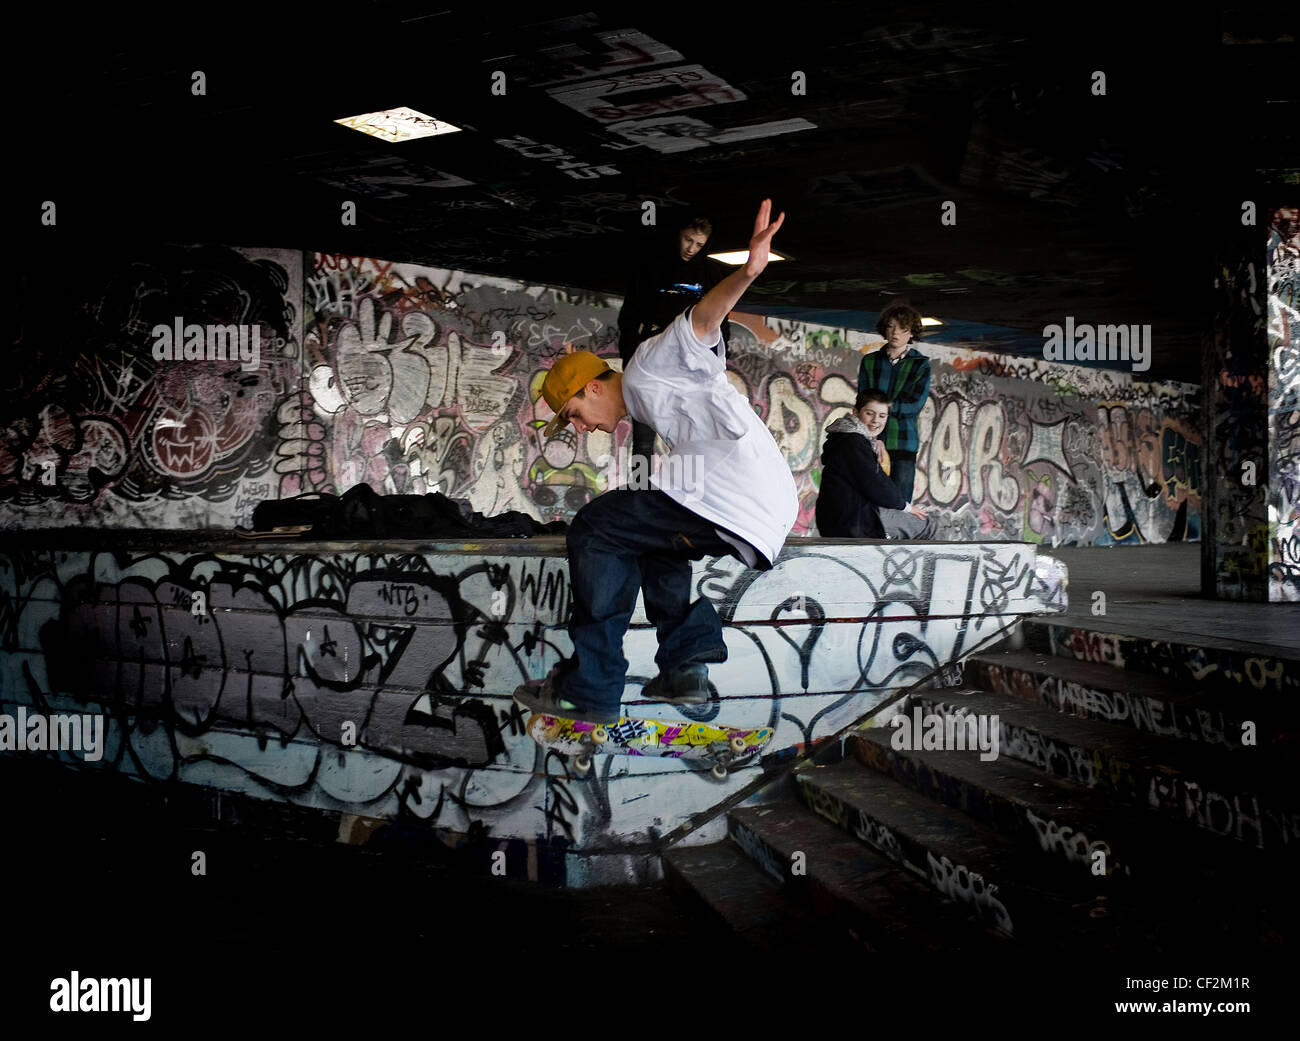 Un guidatore di skateboard eseguendo uno stunt al undercroft sulla banca del sud. Foto Stock